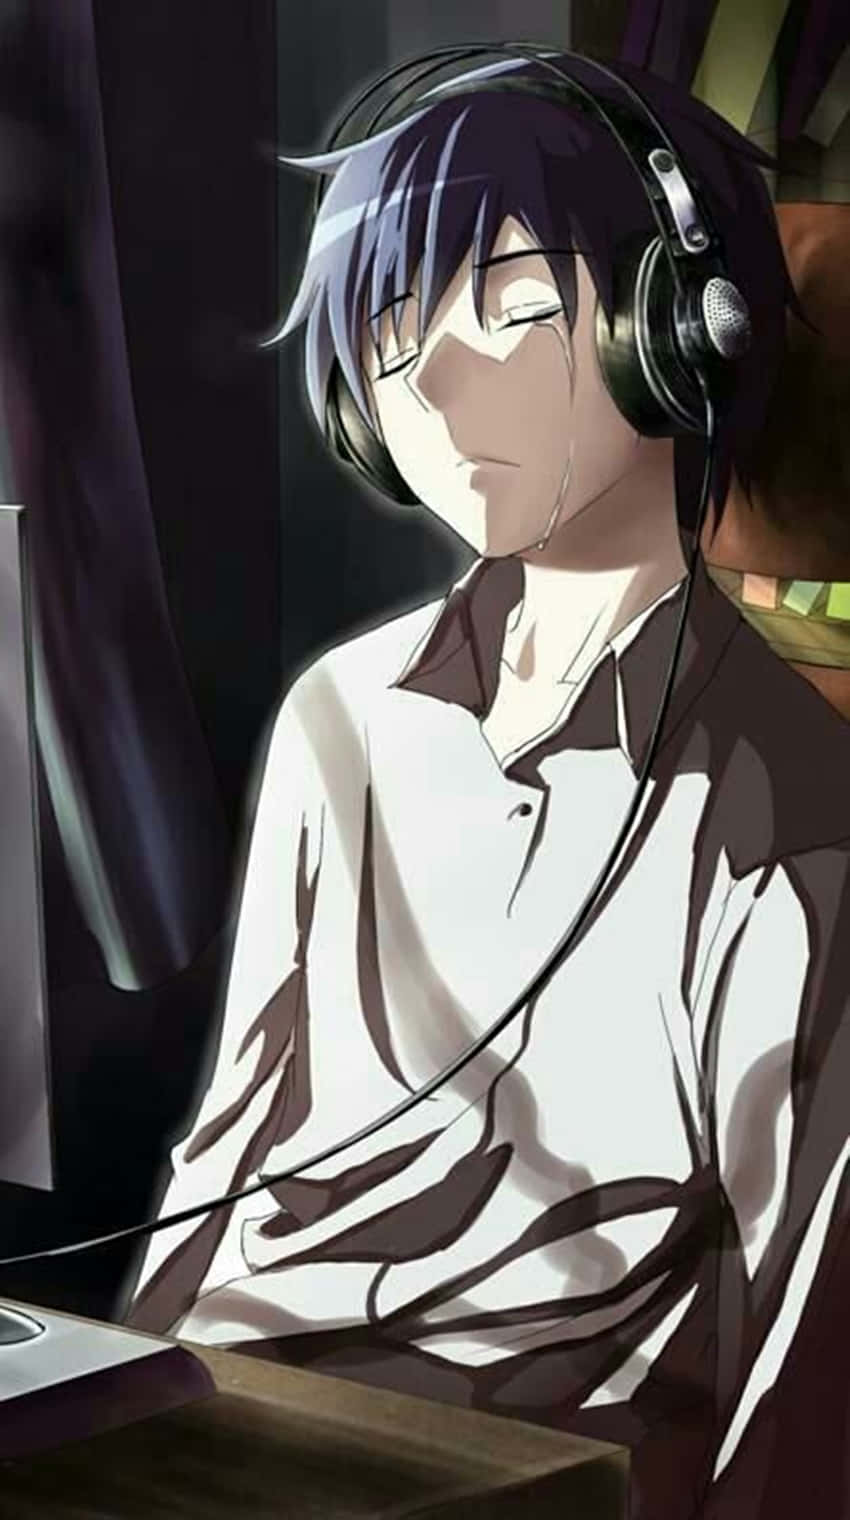 Trist Anime Boy Iført Hovedtelefoner Wallpaper